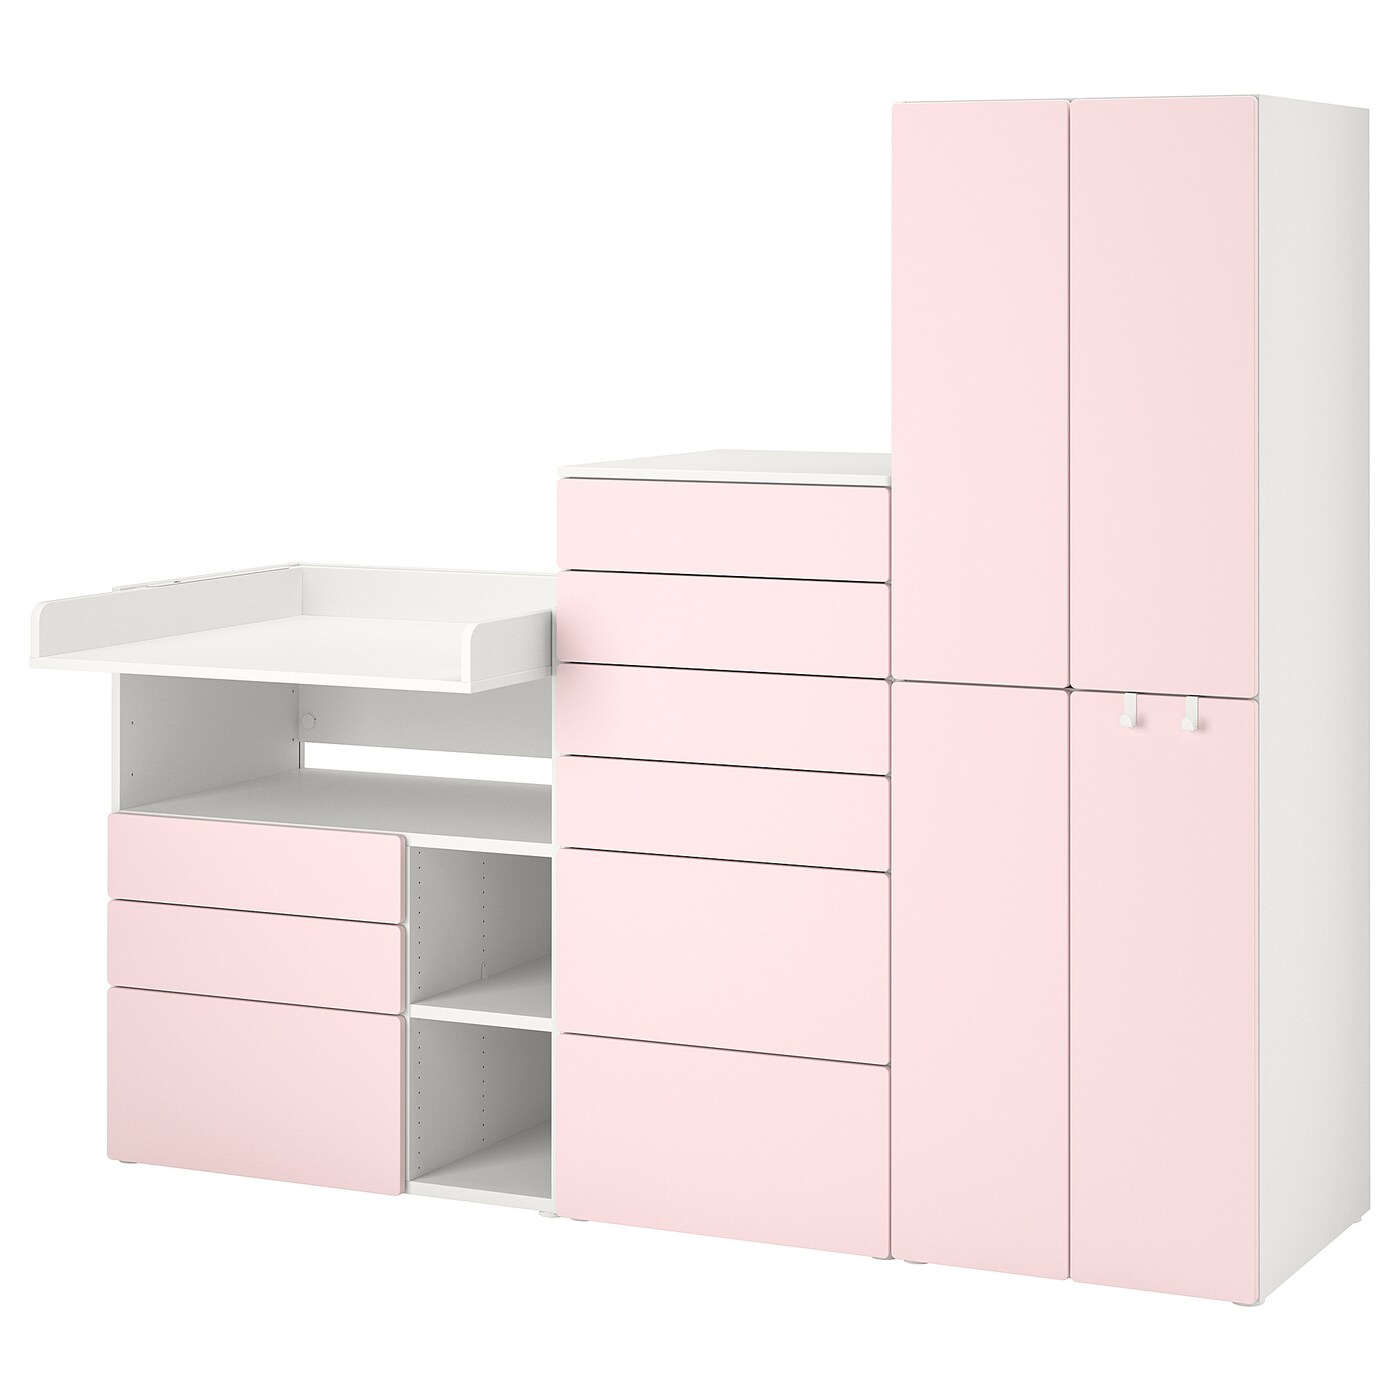 Детская гардеробная комбинация - IKEA PLATSA SMÅSTAD/SMASTAD, 181x79x210см, белый/розовый, ПЛАТСА СМОСТАД ИКЕА